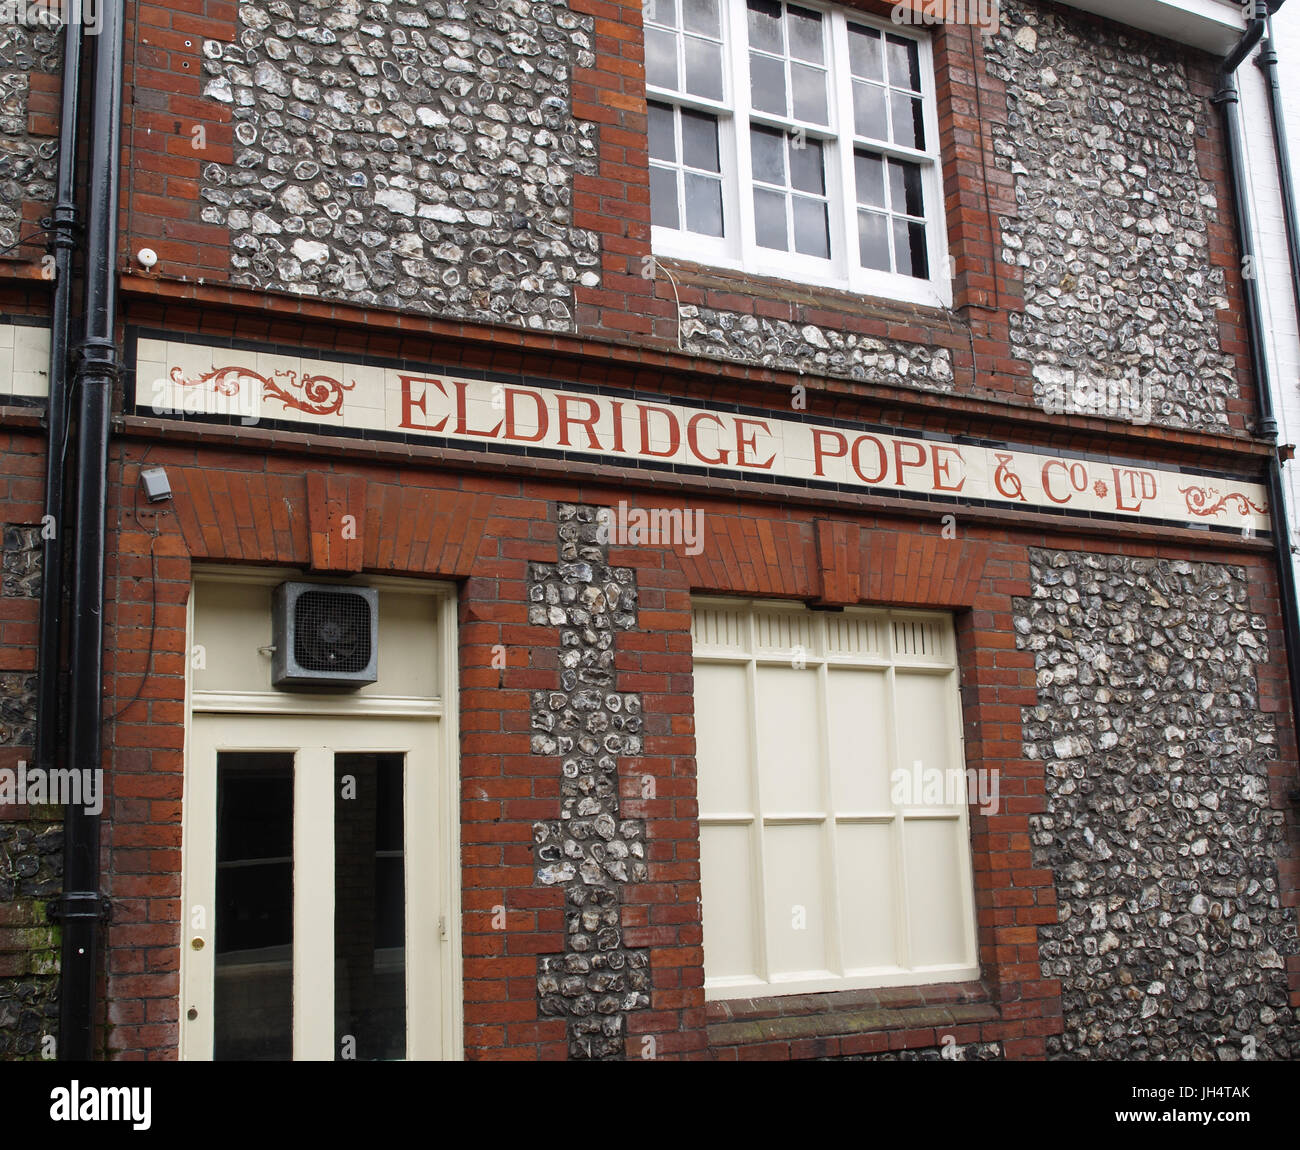 Old Eldridge Pope public house signage in Winchester, Hampshire, England, UK Stock Photo